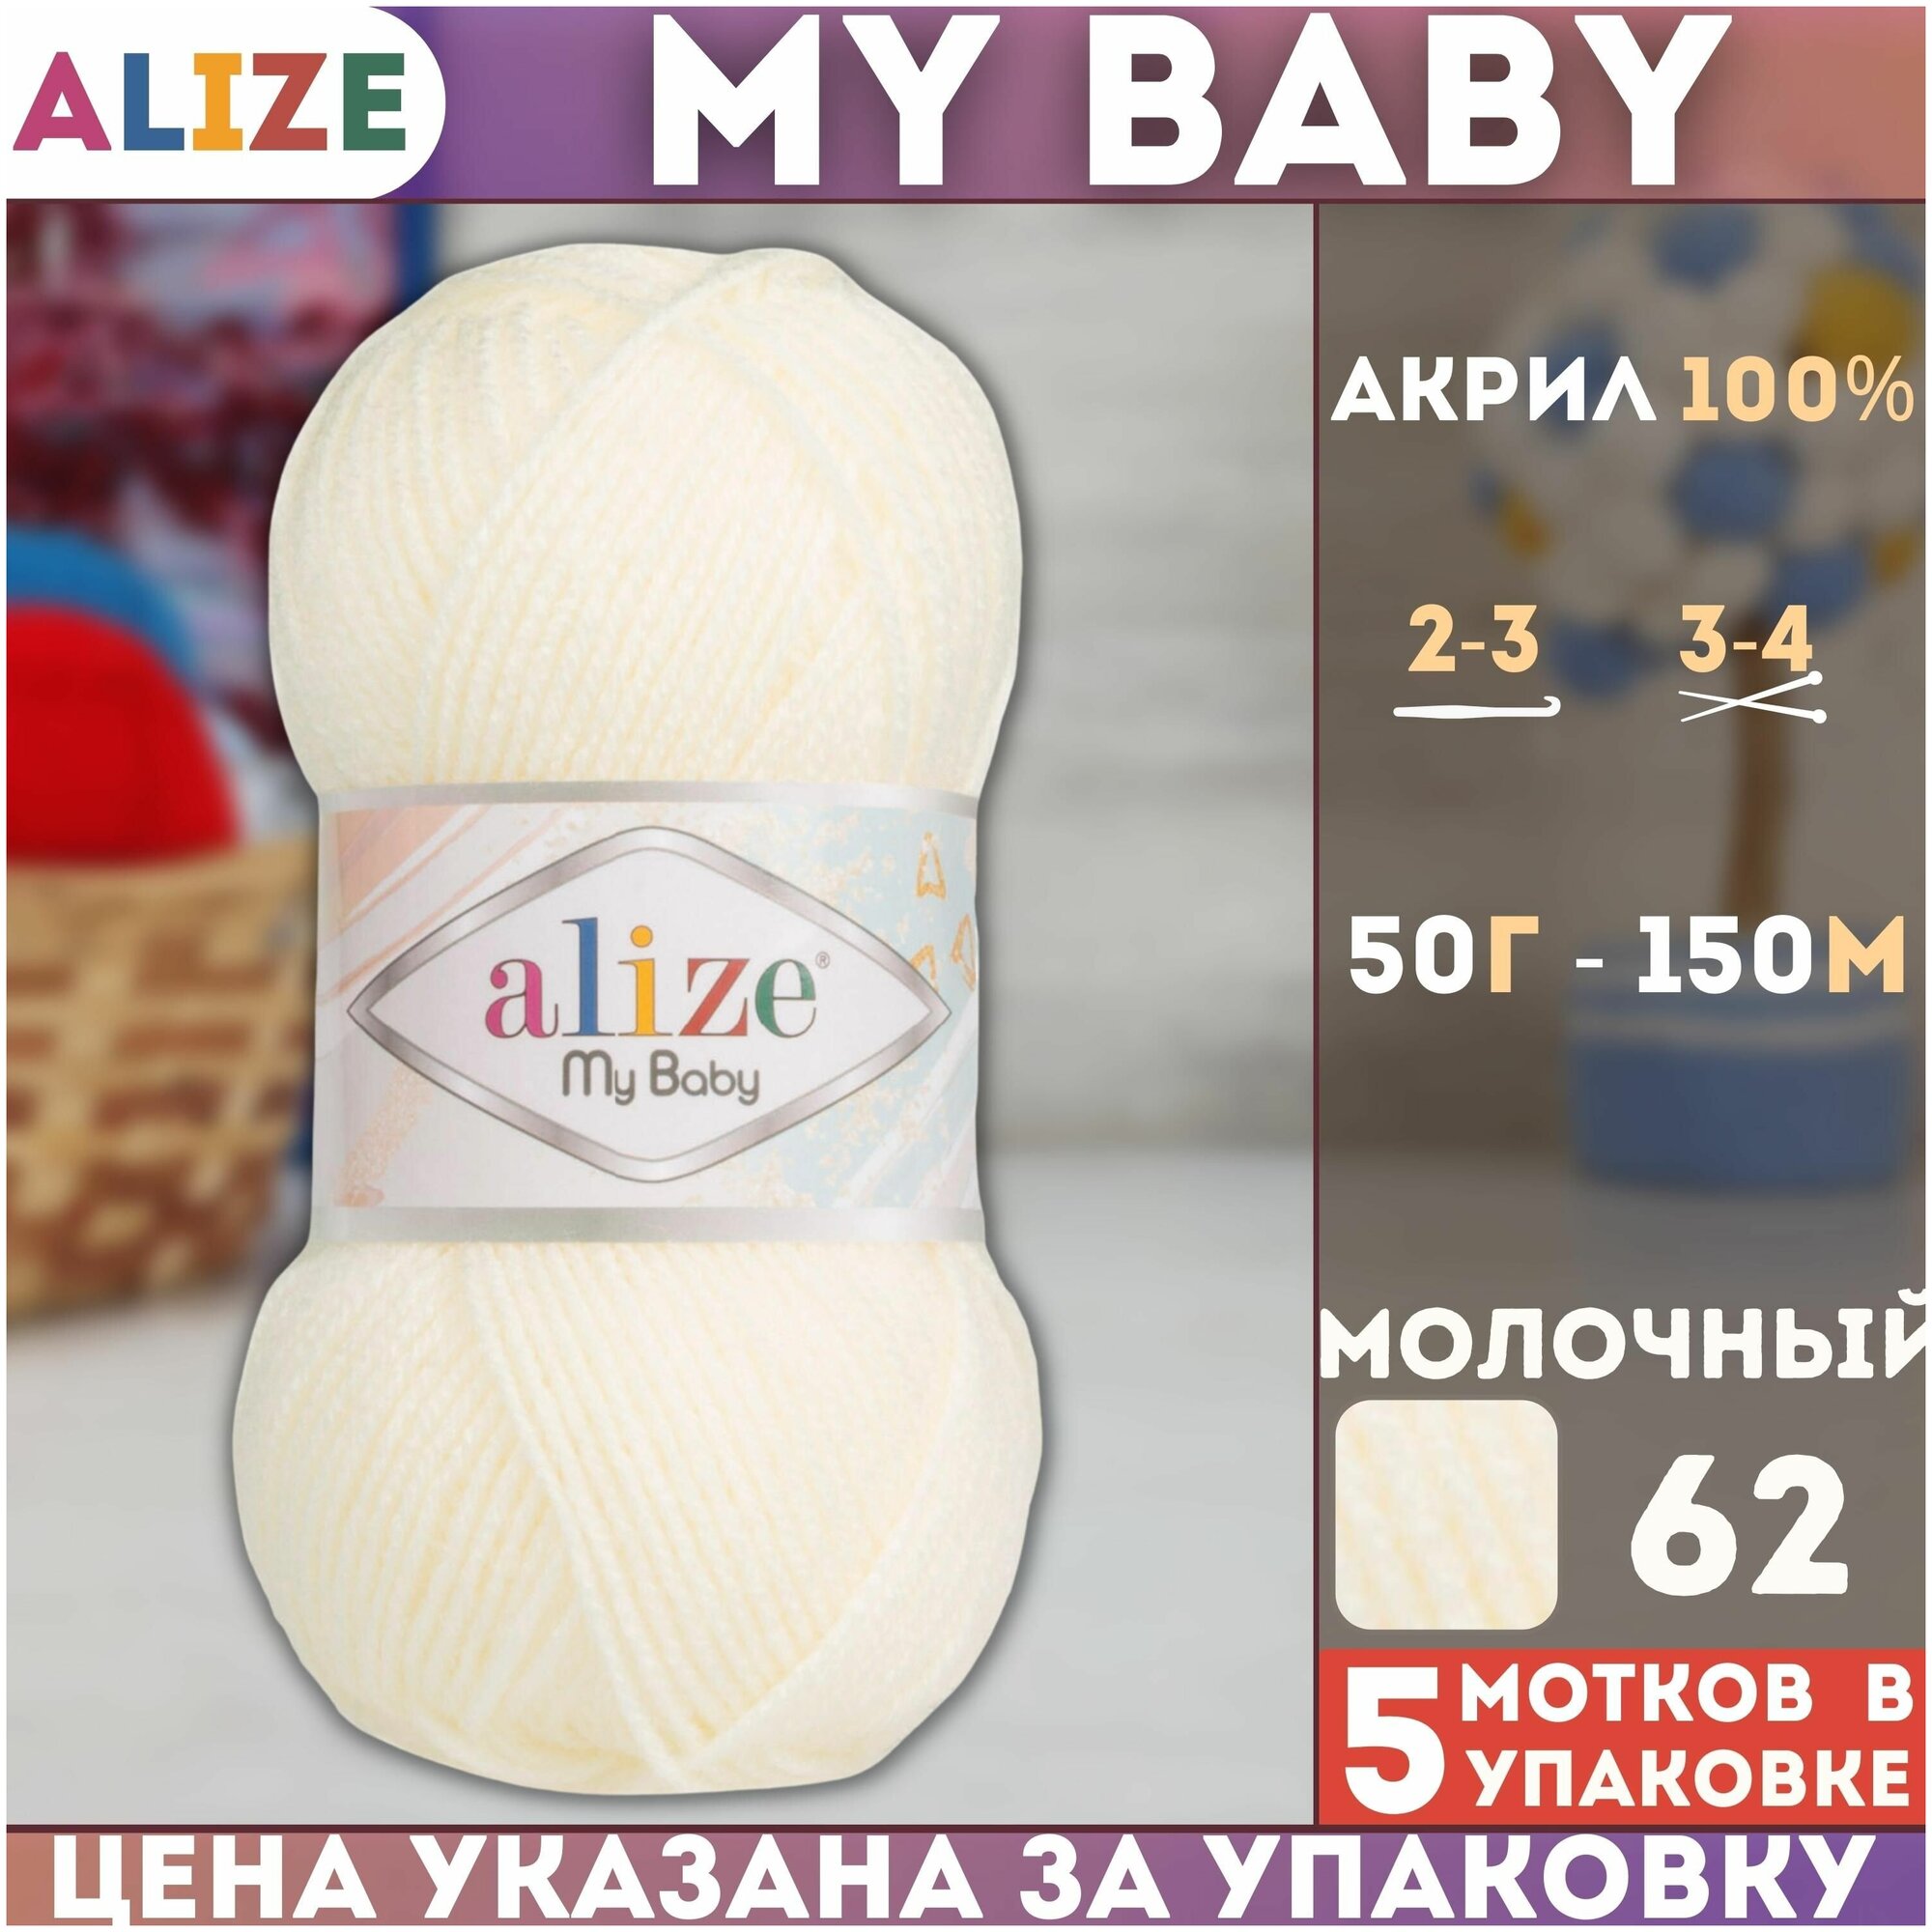 Пряжа MY BABY (Alize), молочный - 62, 100% акрил, 5 мотков, 50 г, 150 м.